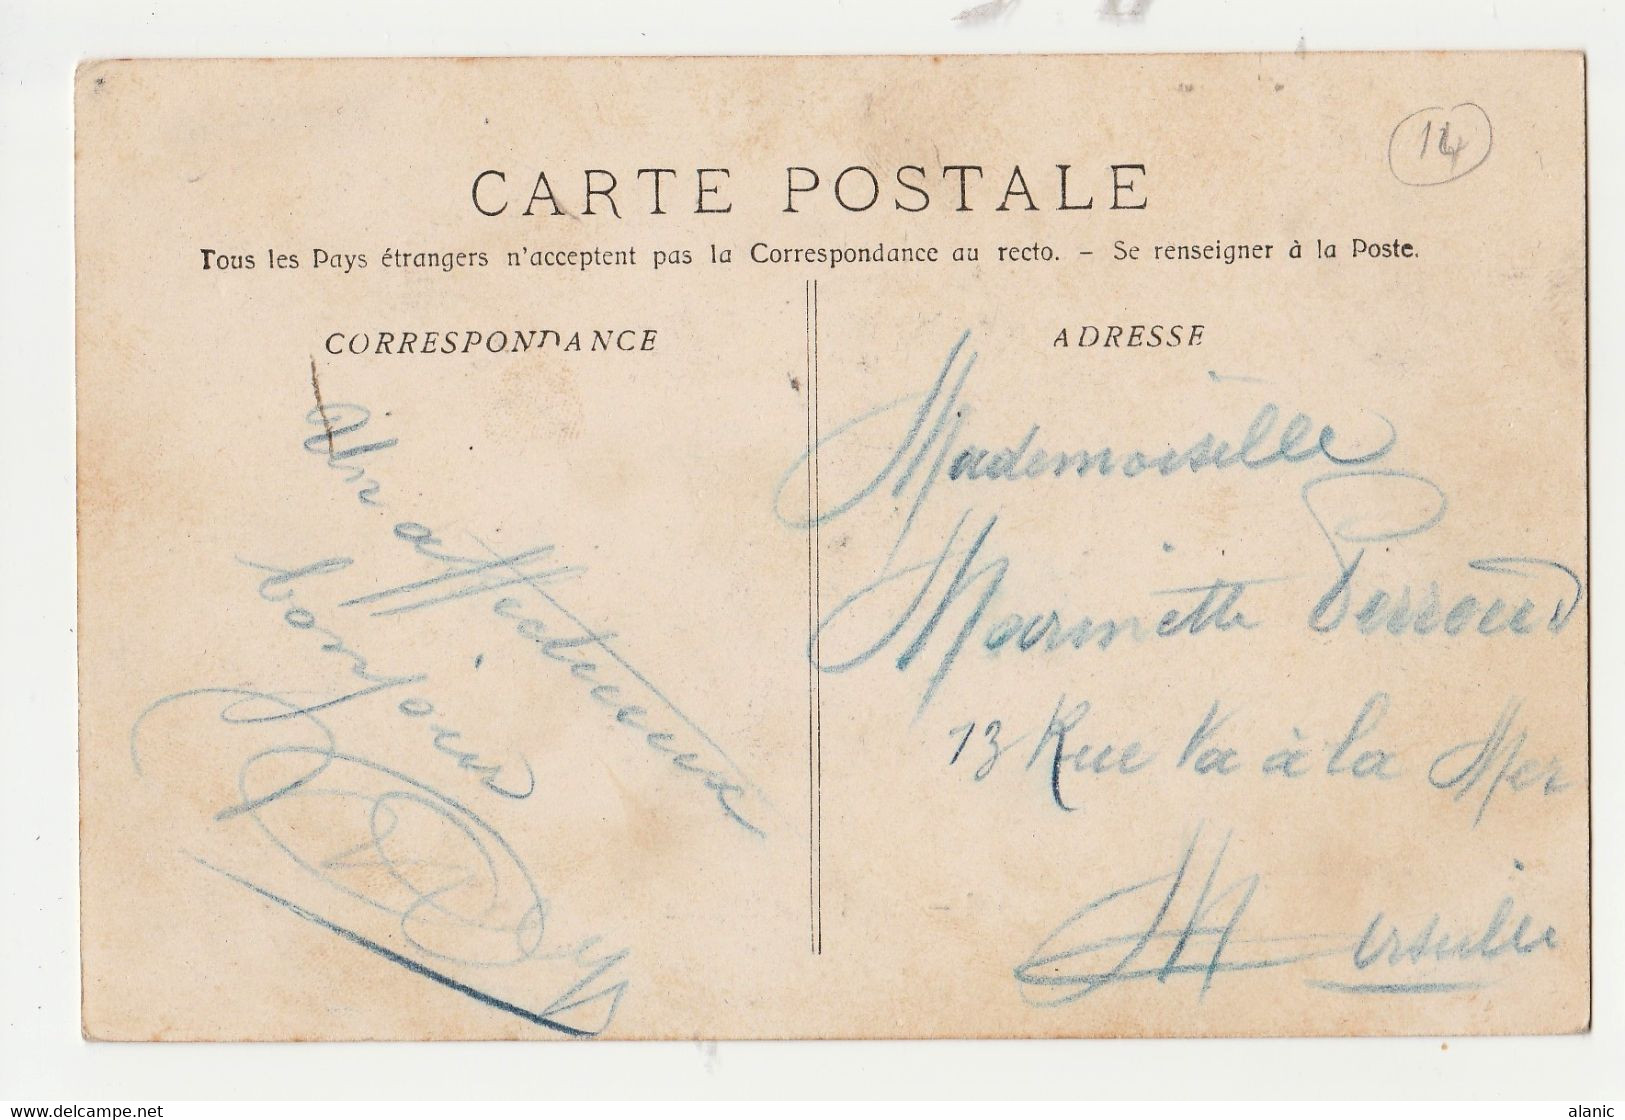 CPA 13 // AURIOL Le Château CIRCULEE 1906 - Auriol